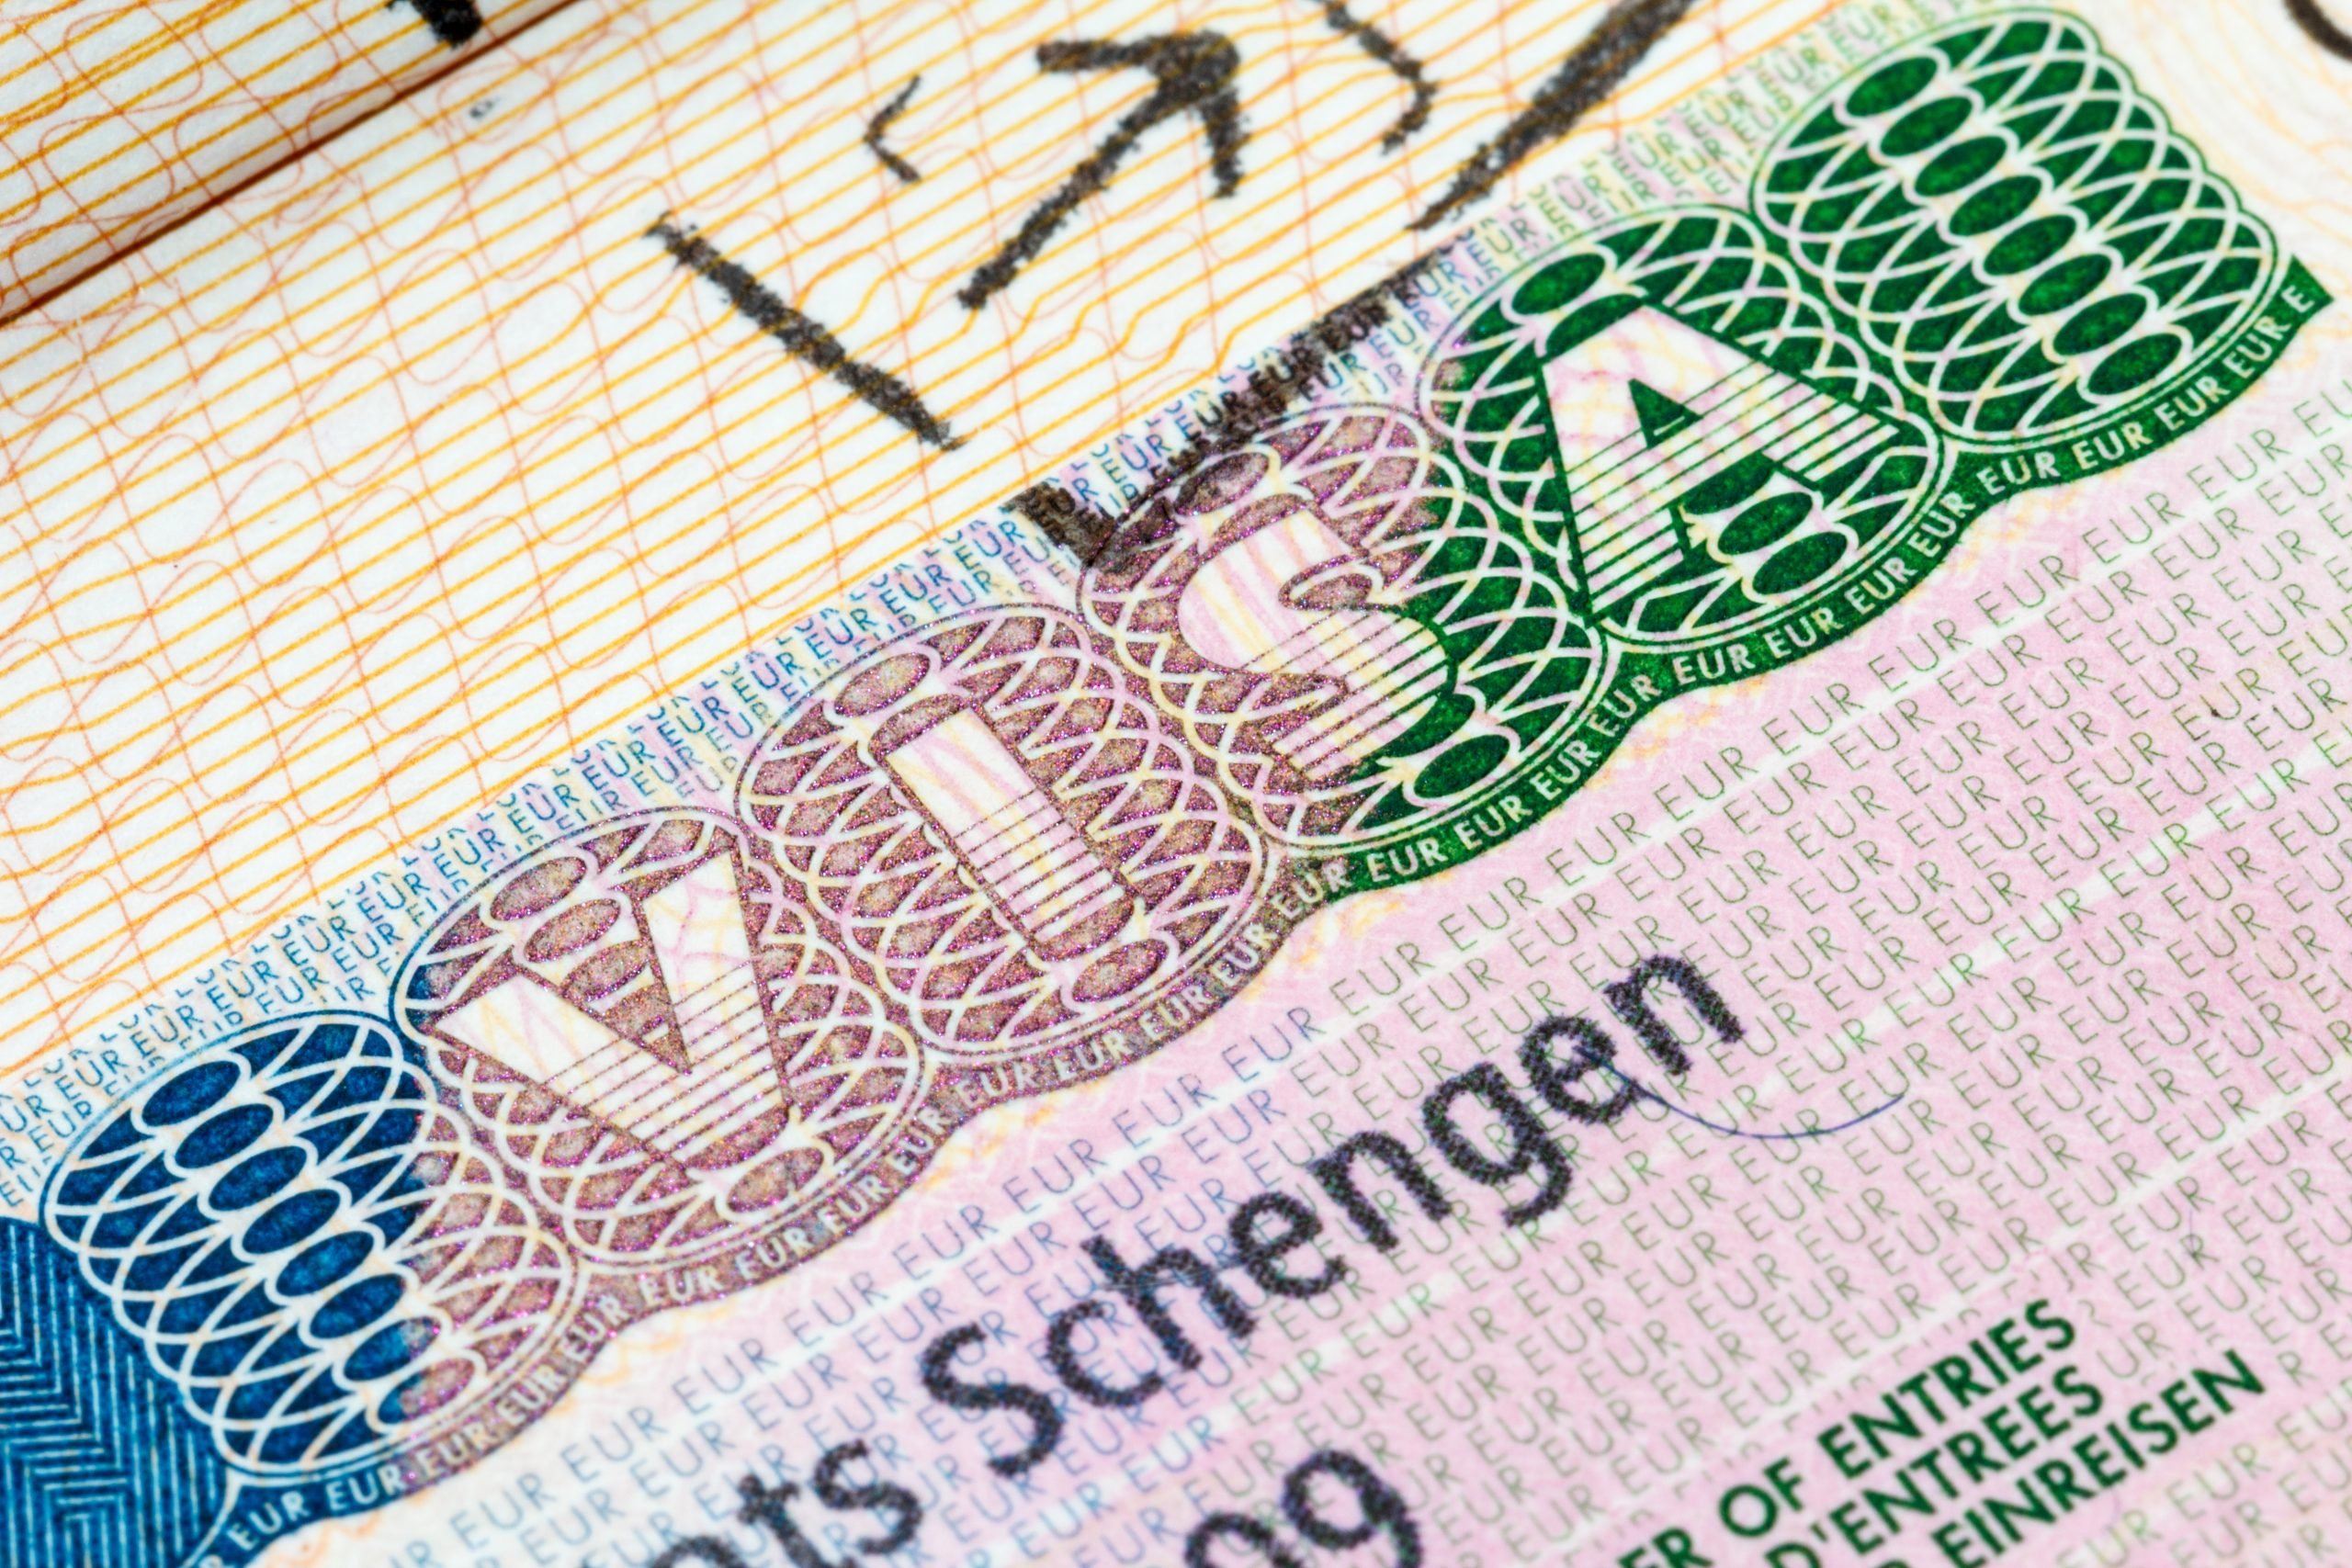 Visto Schengen em documento